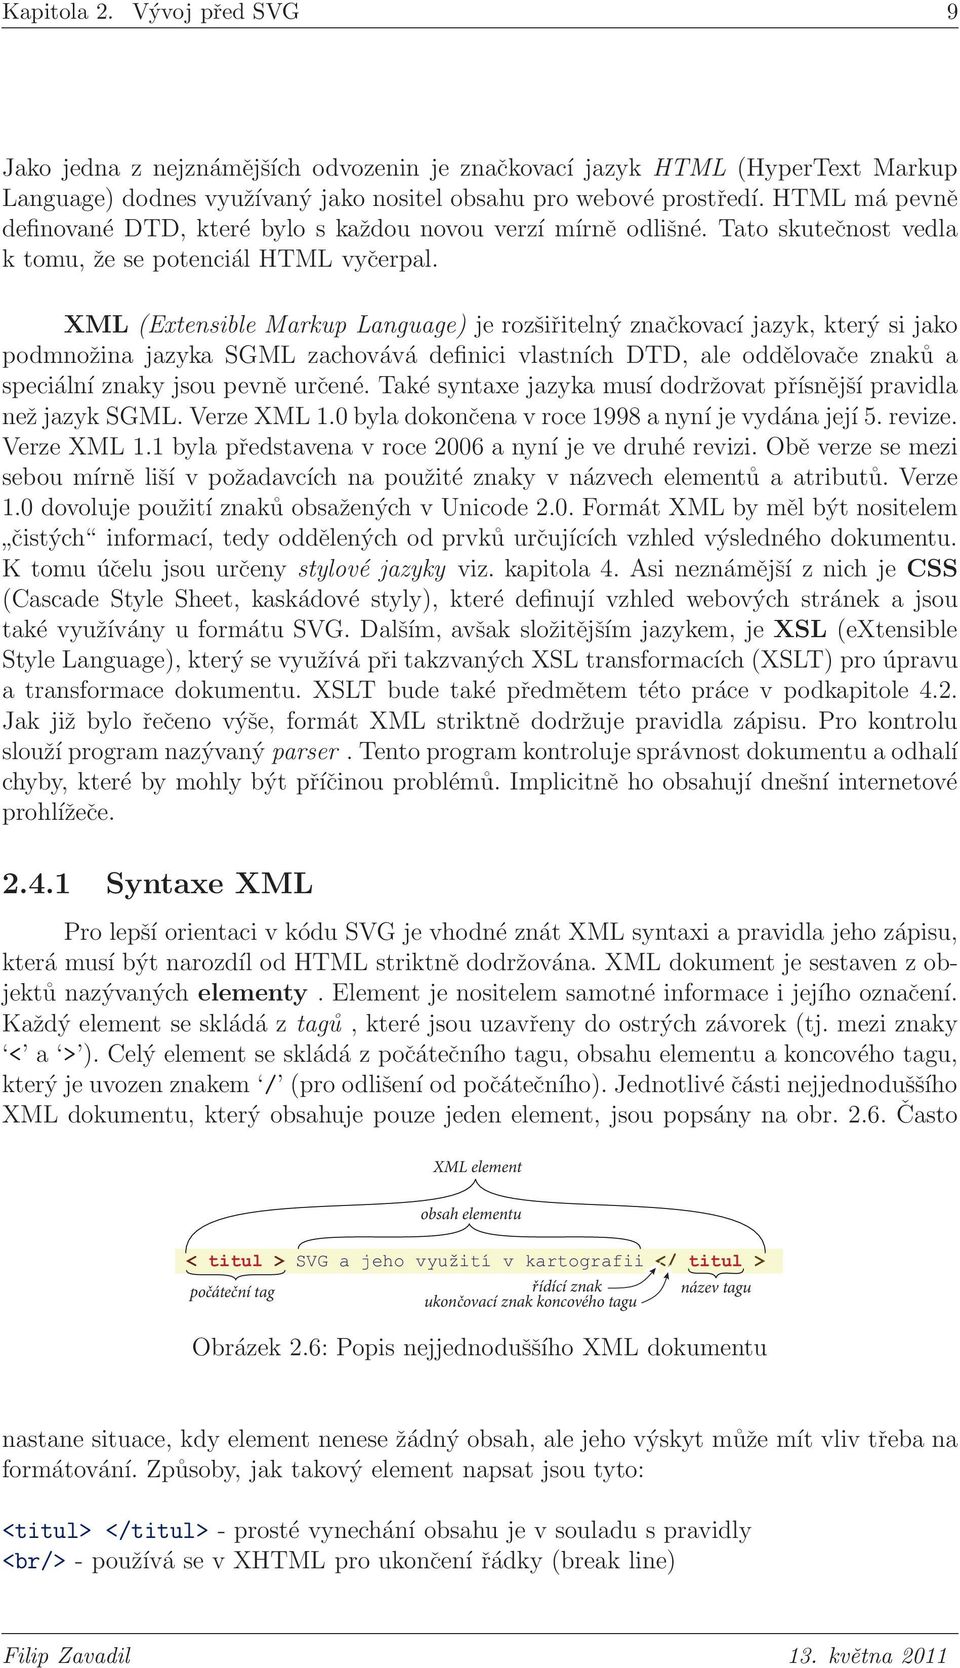 XML (Extensible Markup Language) je rozšiřitelný značkovací jazyk, který si jako podmnožina jazyka SGML zachovává definici vlastních DTD, ale oddělovače znaků a speciální znaky jsou pevně určené.